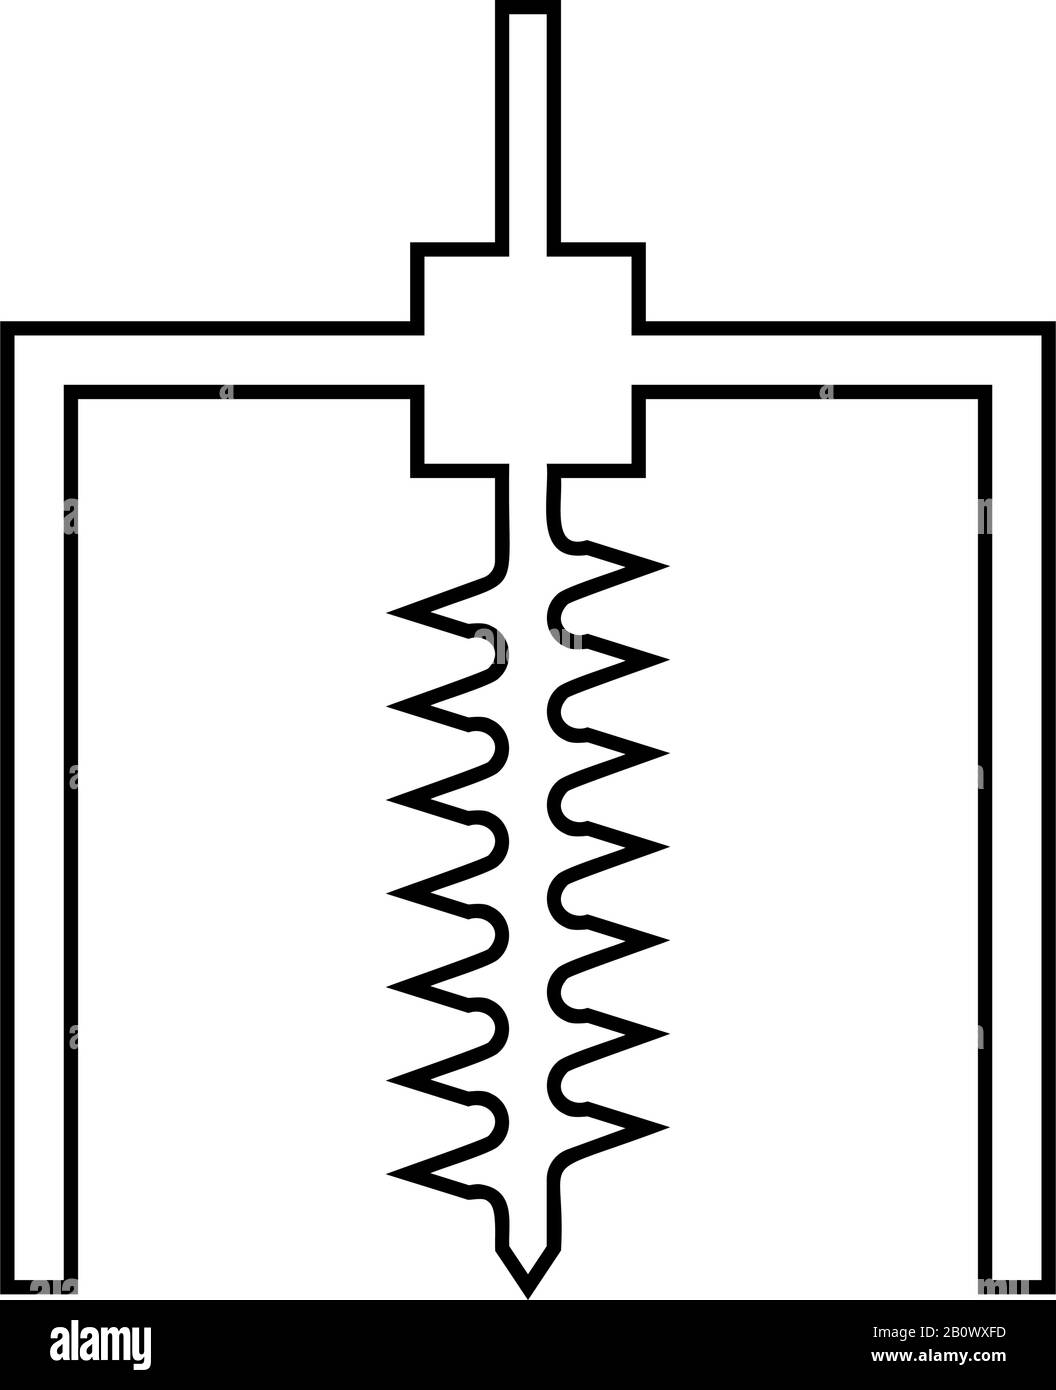 Bohrstängelbohrung für Erdminenindustrie geologisches Bohrkonzept Auger Symbol Umriss schwarze Farbvektor-Abbildung flaches, einfaches Bild Stock Vektor